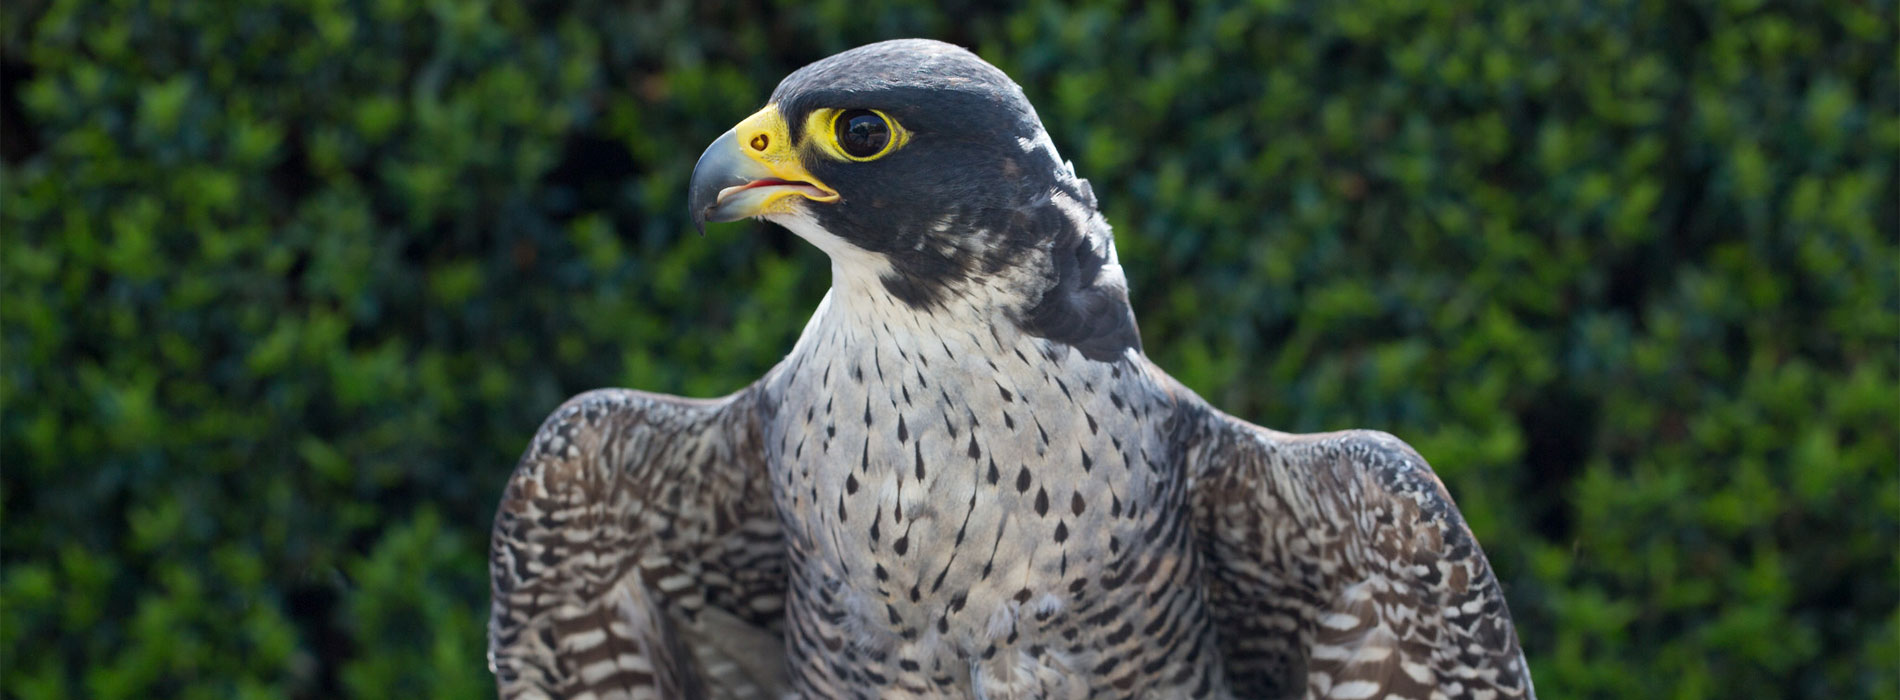 Falcon perched